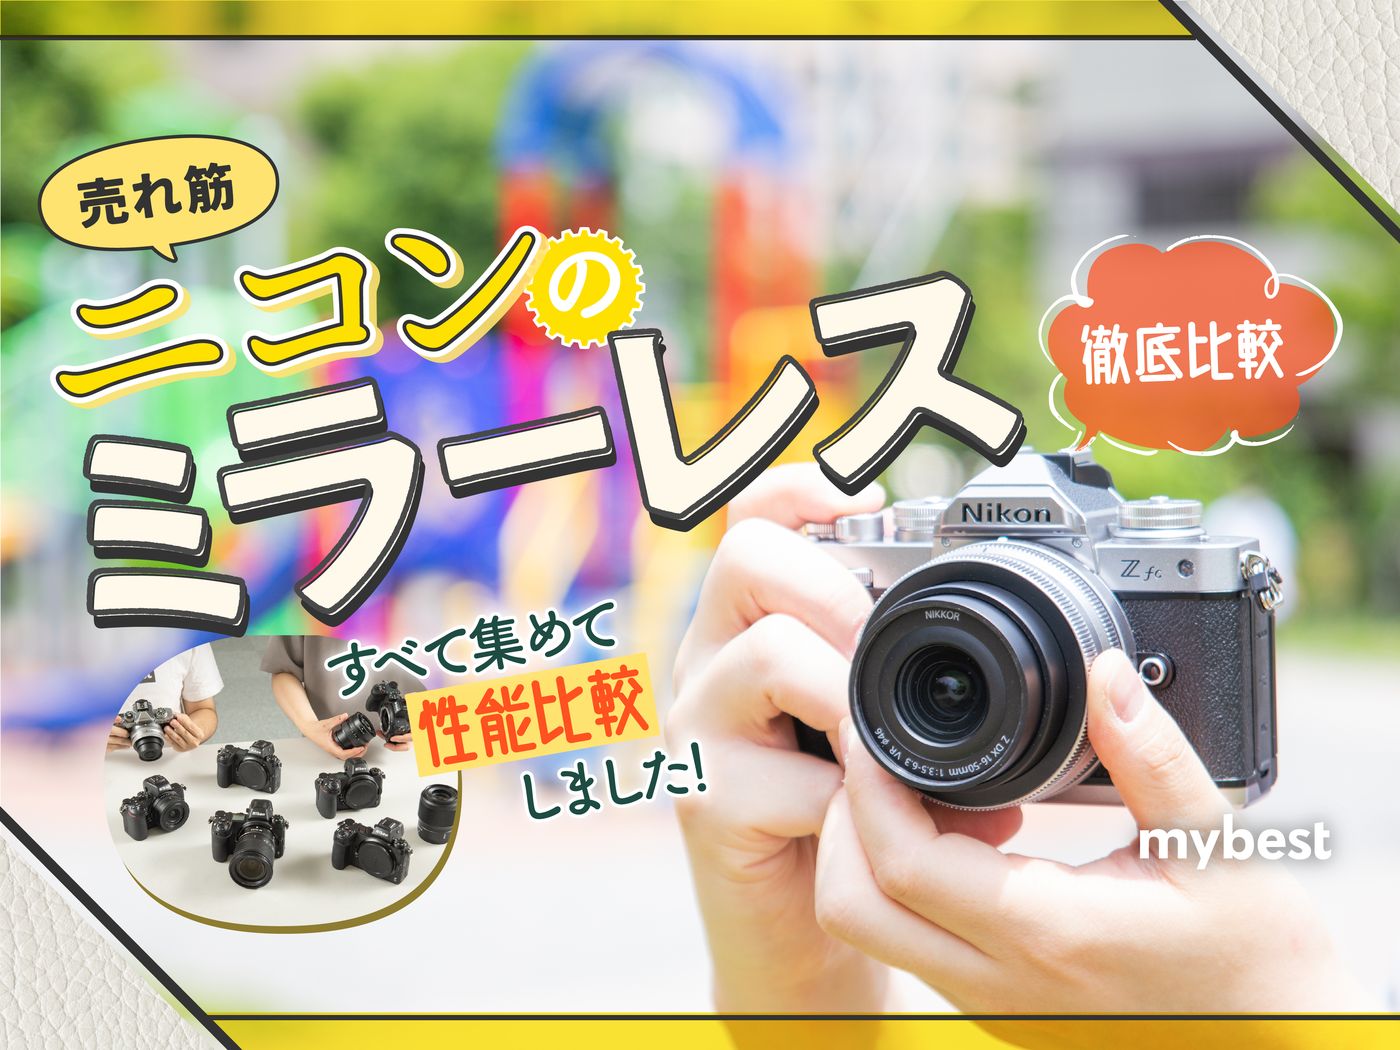 純正買取シンプルで使いやすくて、初心者さんにおすすめ Nikon D40 #6463 デジタルカメラ